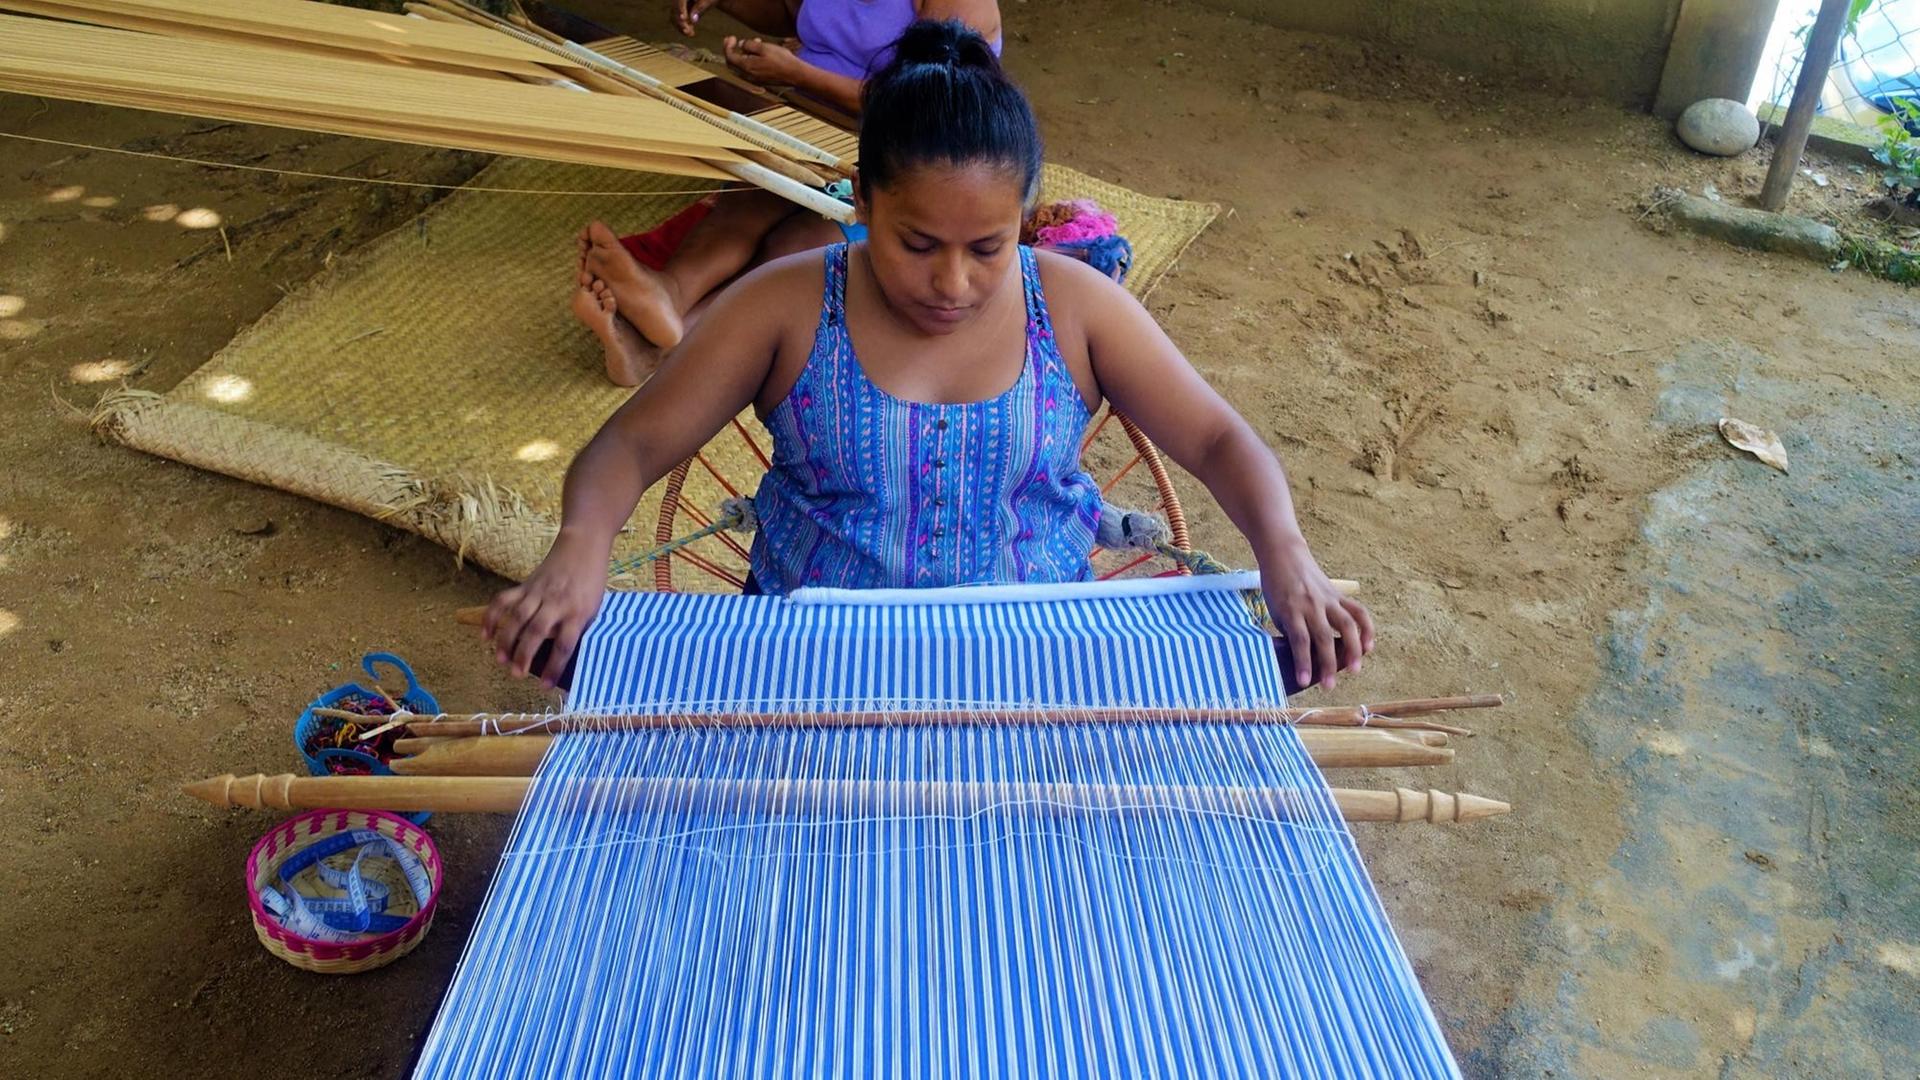 Indigene Weberin in San Juan arbeitet an einem Kleidungsstück an ihrer Maschine im Hof.